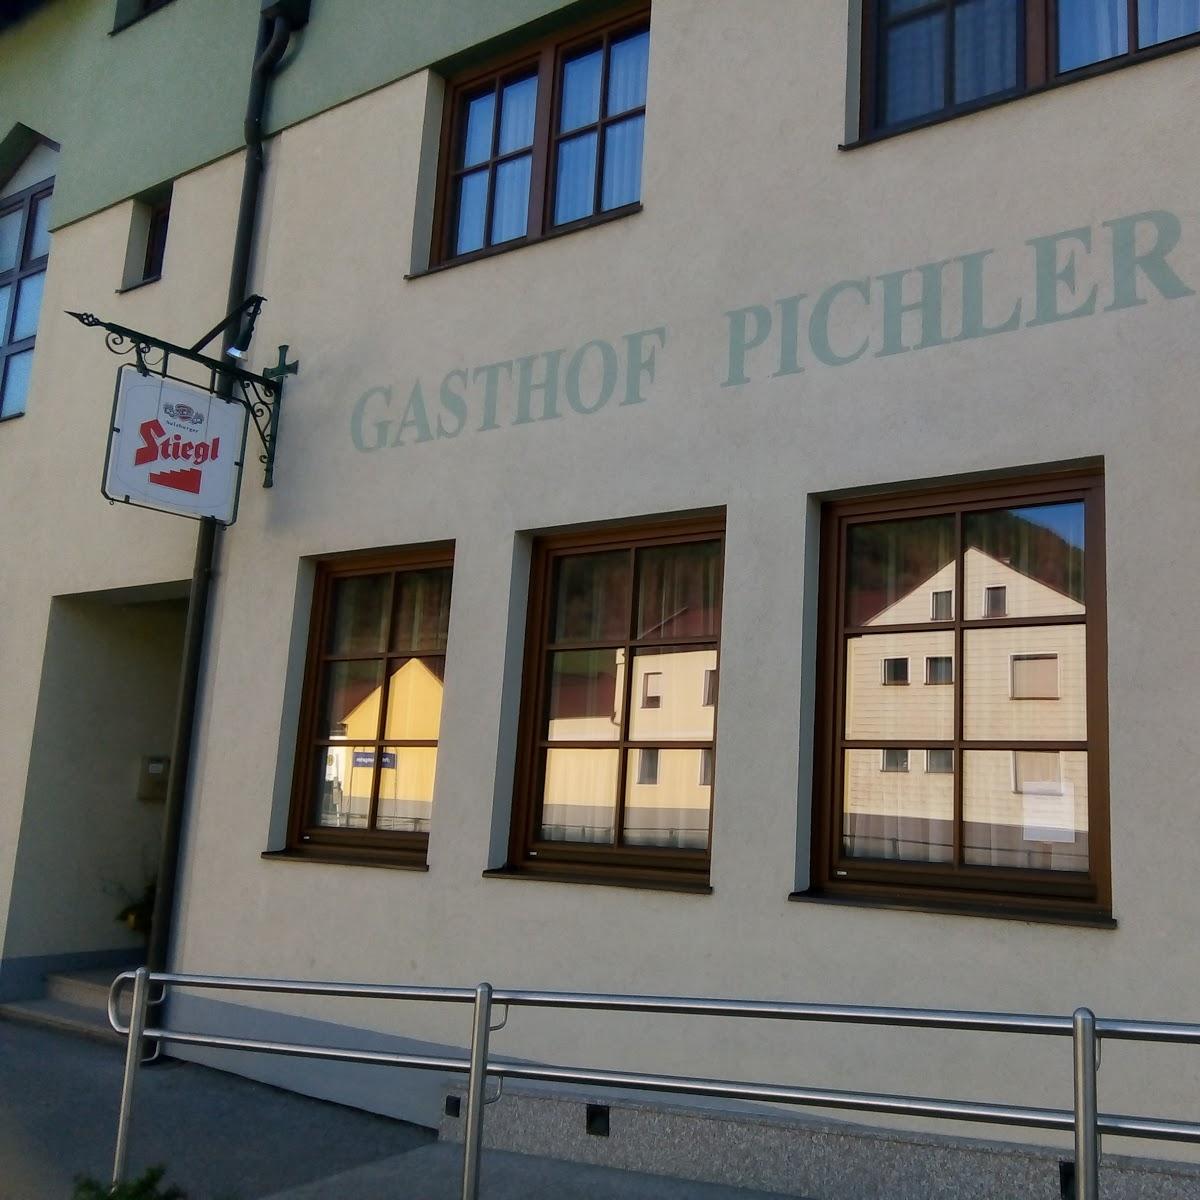 Restaurant "Gasthof PICHLER PETERSBAUMGARTEN" in Schwarzenbach